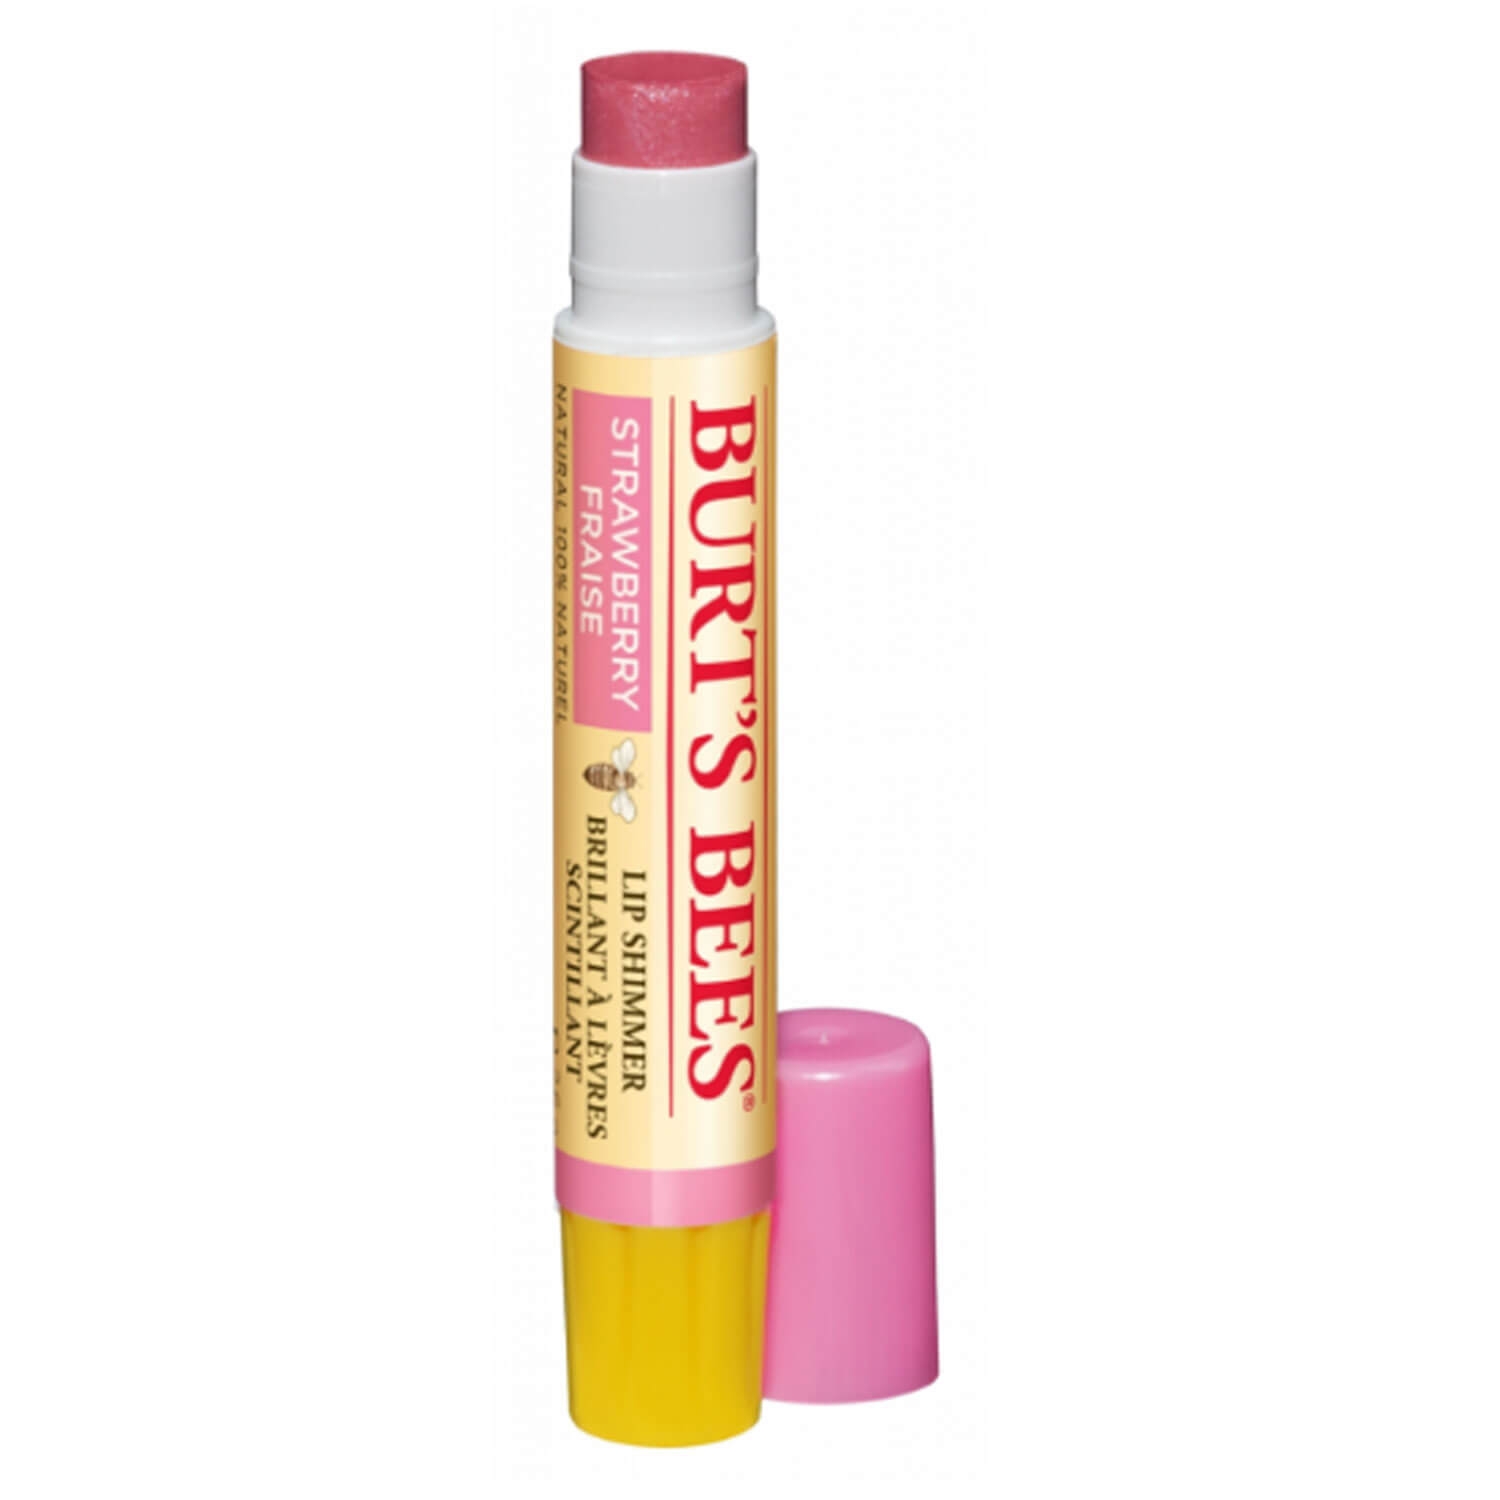 Produktbild von Burt's Bees - Lip Shimmer Strawberry